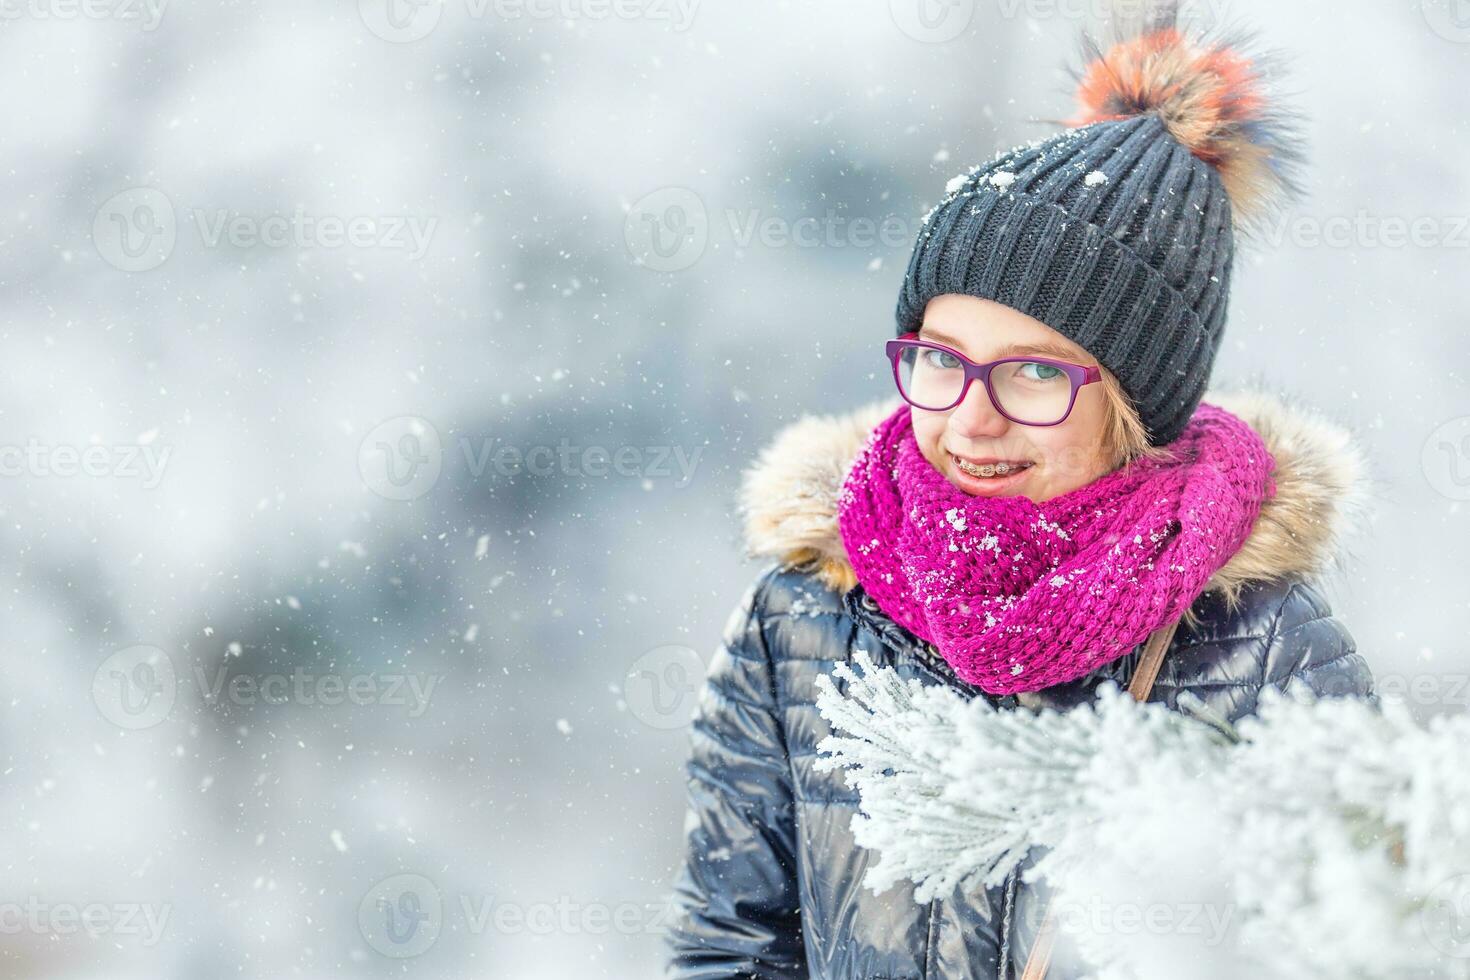 beleza inverno menina sopro neve dentro gelado inverno parque ou ao ar livre. menina e inverno frio clima foto